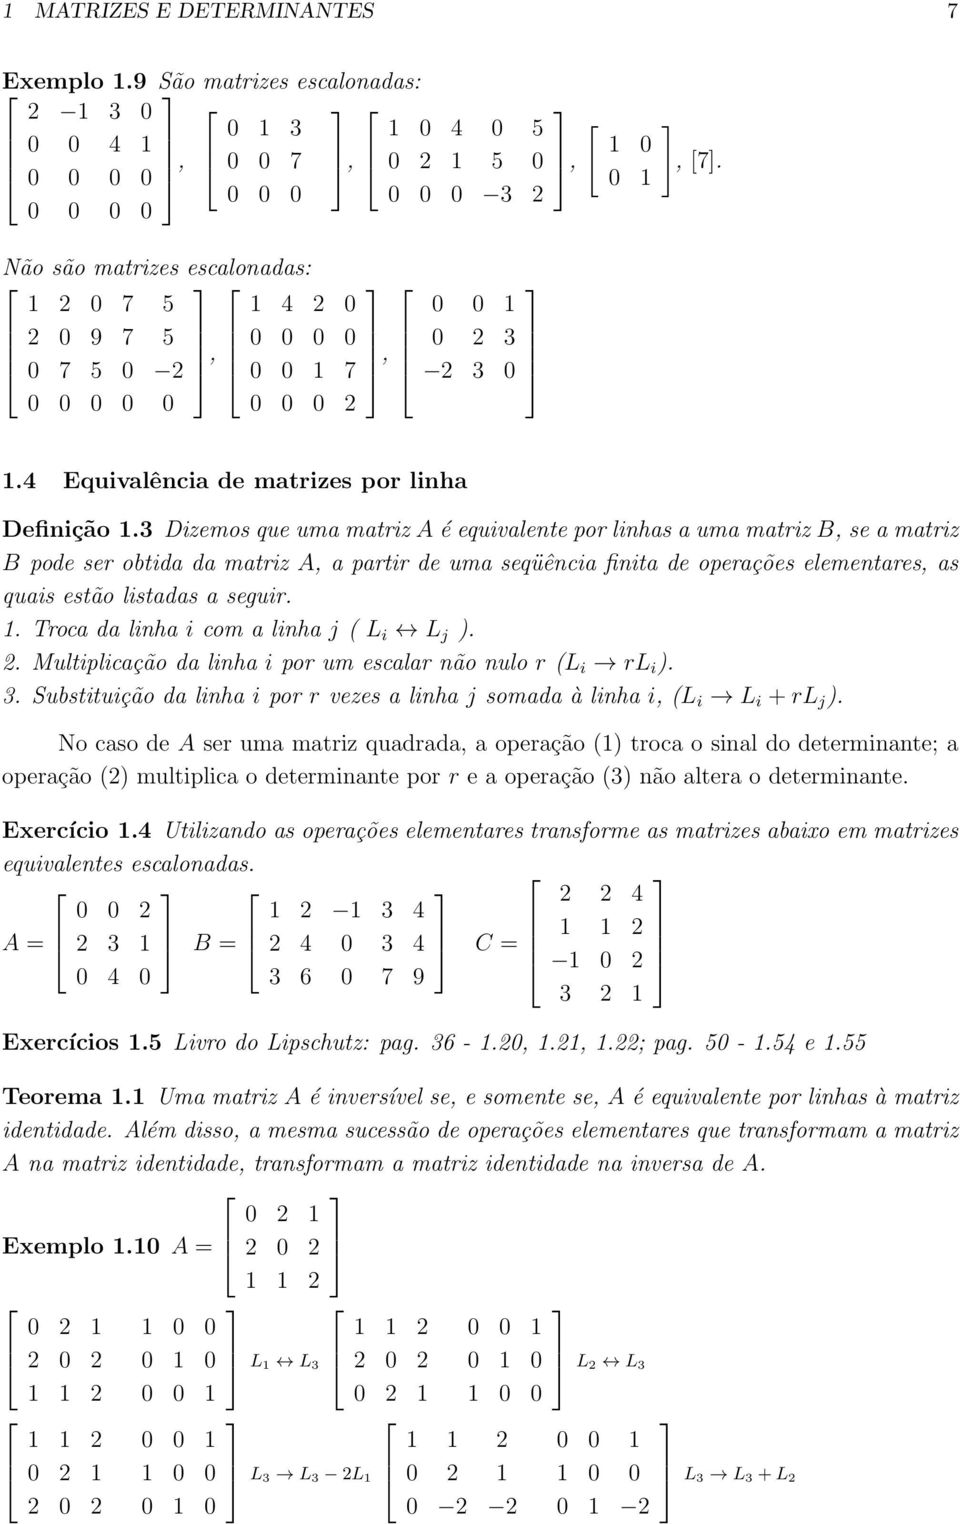 3 Dizemos que uma matriz A é equivalente por linhas a uma matriz B, se a matriz B pode ser obtida da matriz A, a partir de uma seqüência finita de operações elementares, as quais estão listadas a